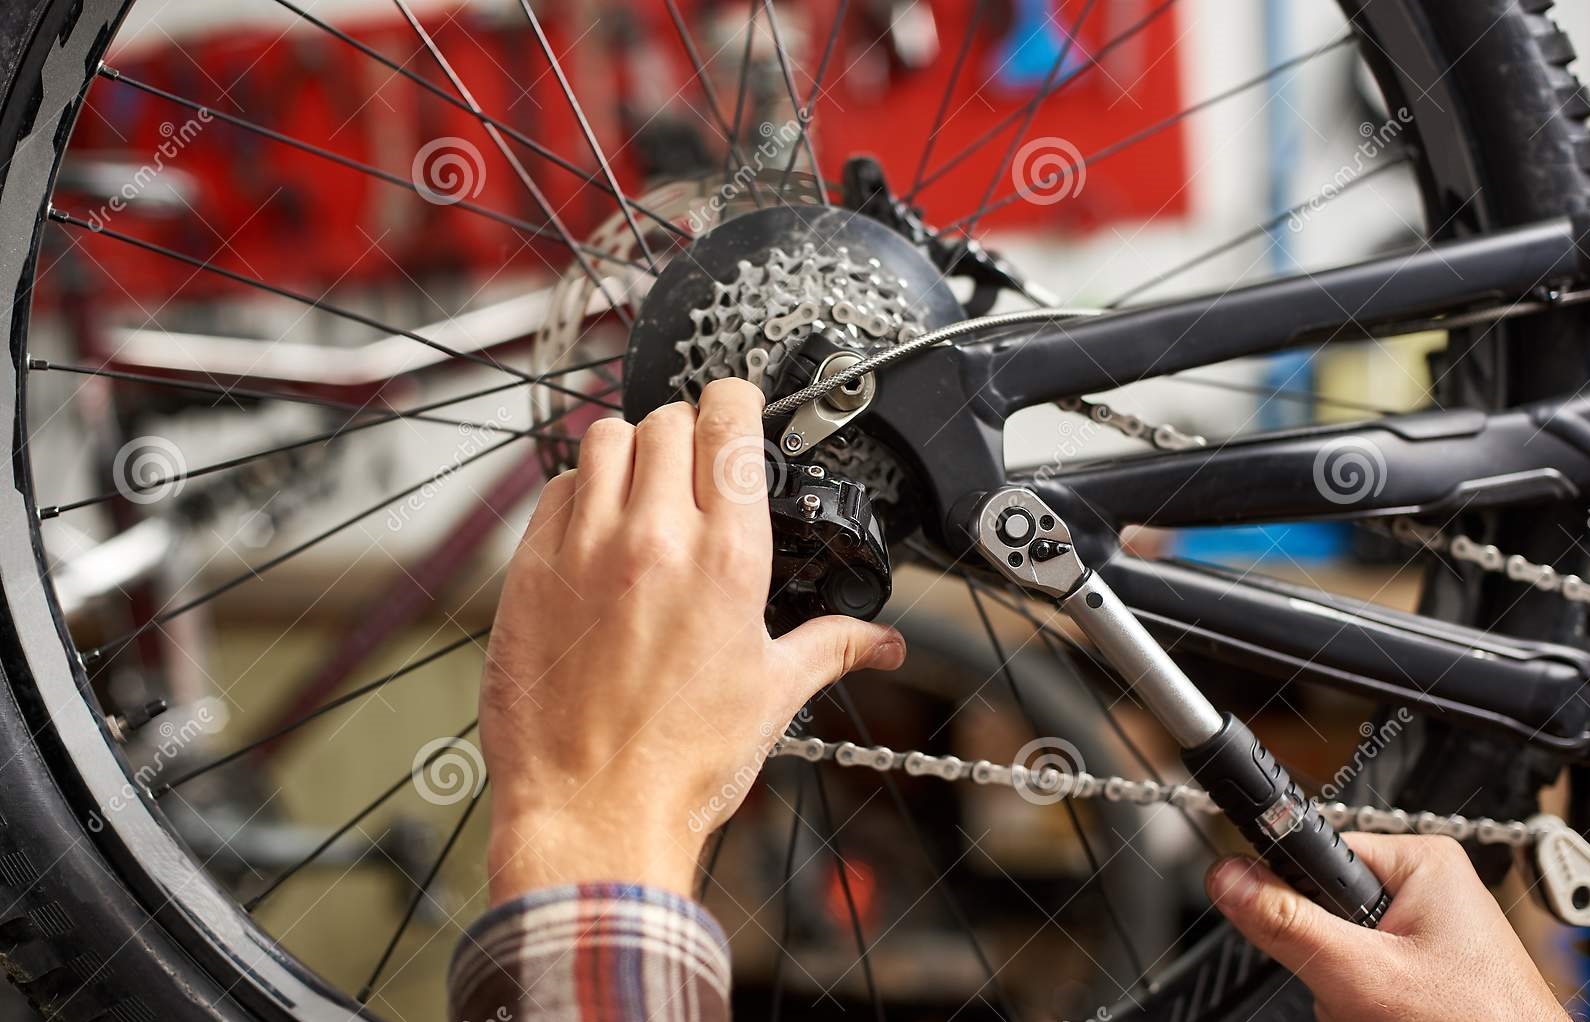 Bike repair shop near me | best bicycles in Dubai - The ...